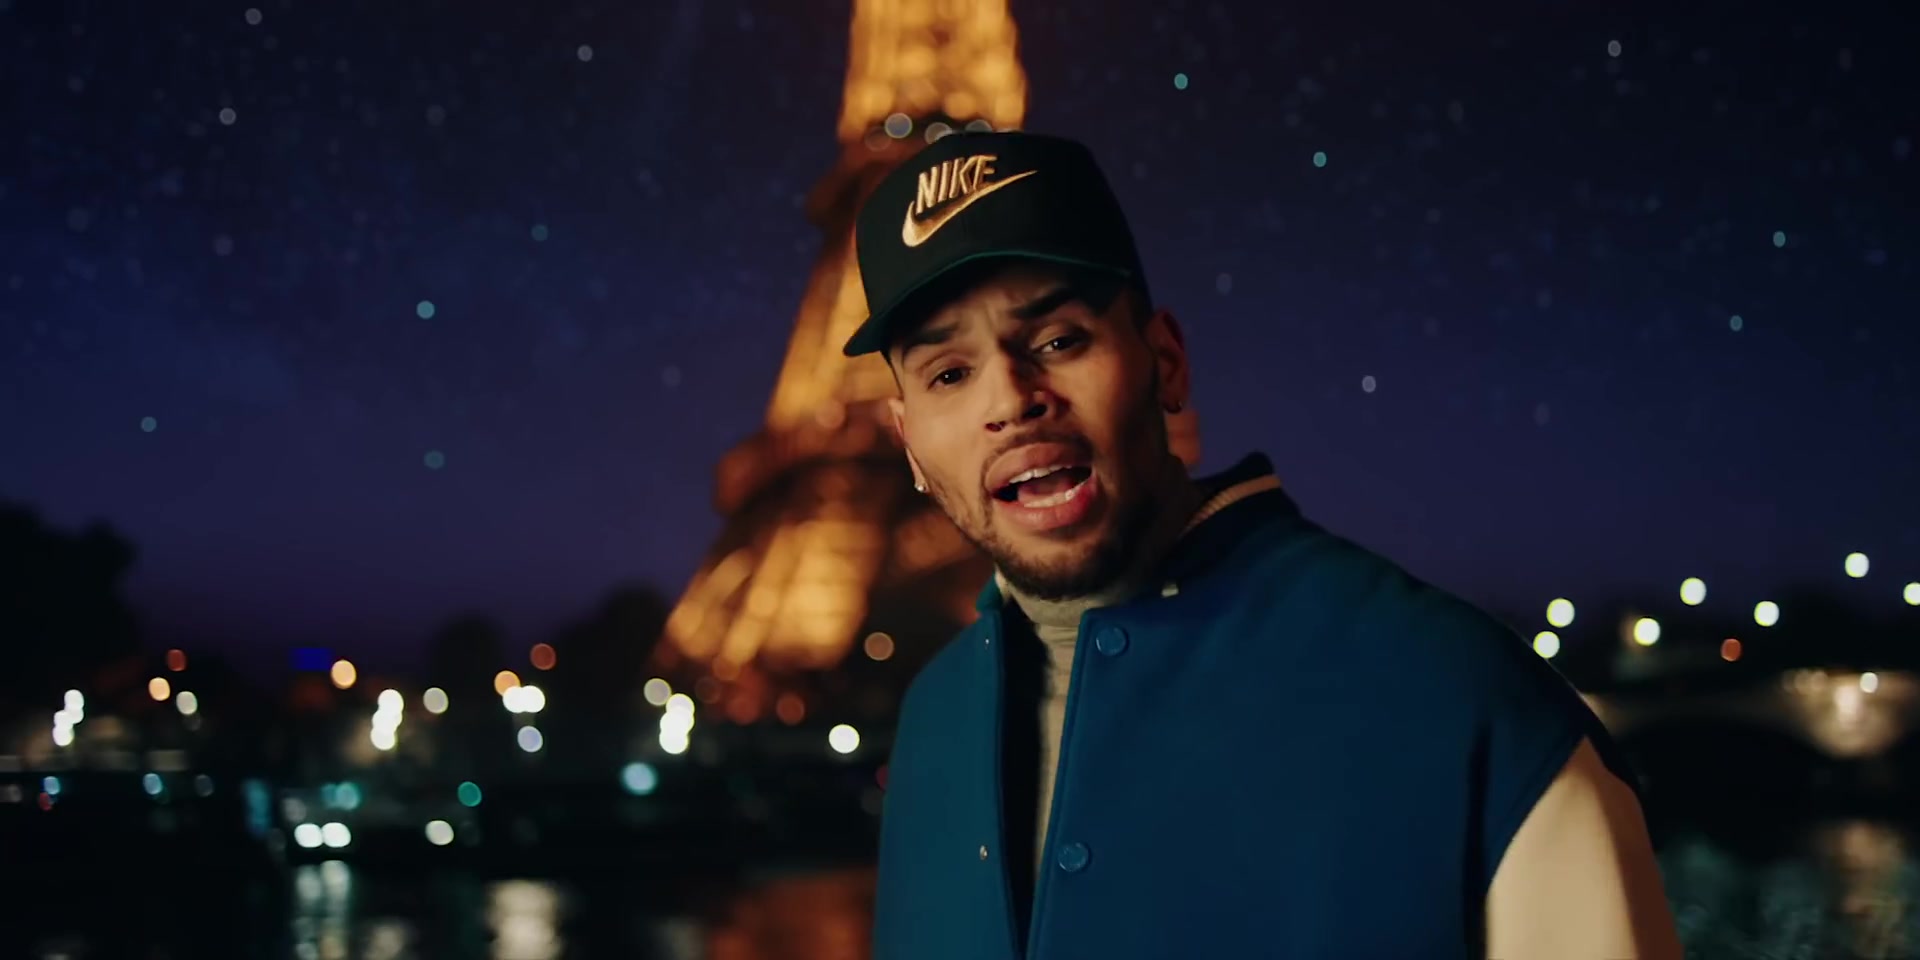 Chris brown more hours. Chris Brown in cap. Chris Brown в синей кепке. Love more Cris Brown. Chris Brown hats.